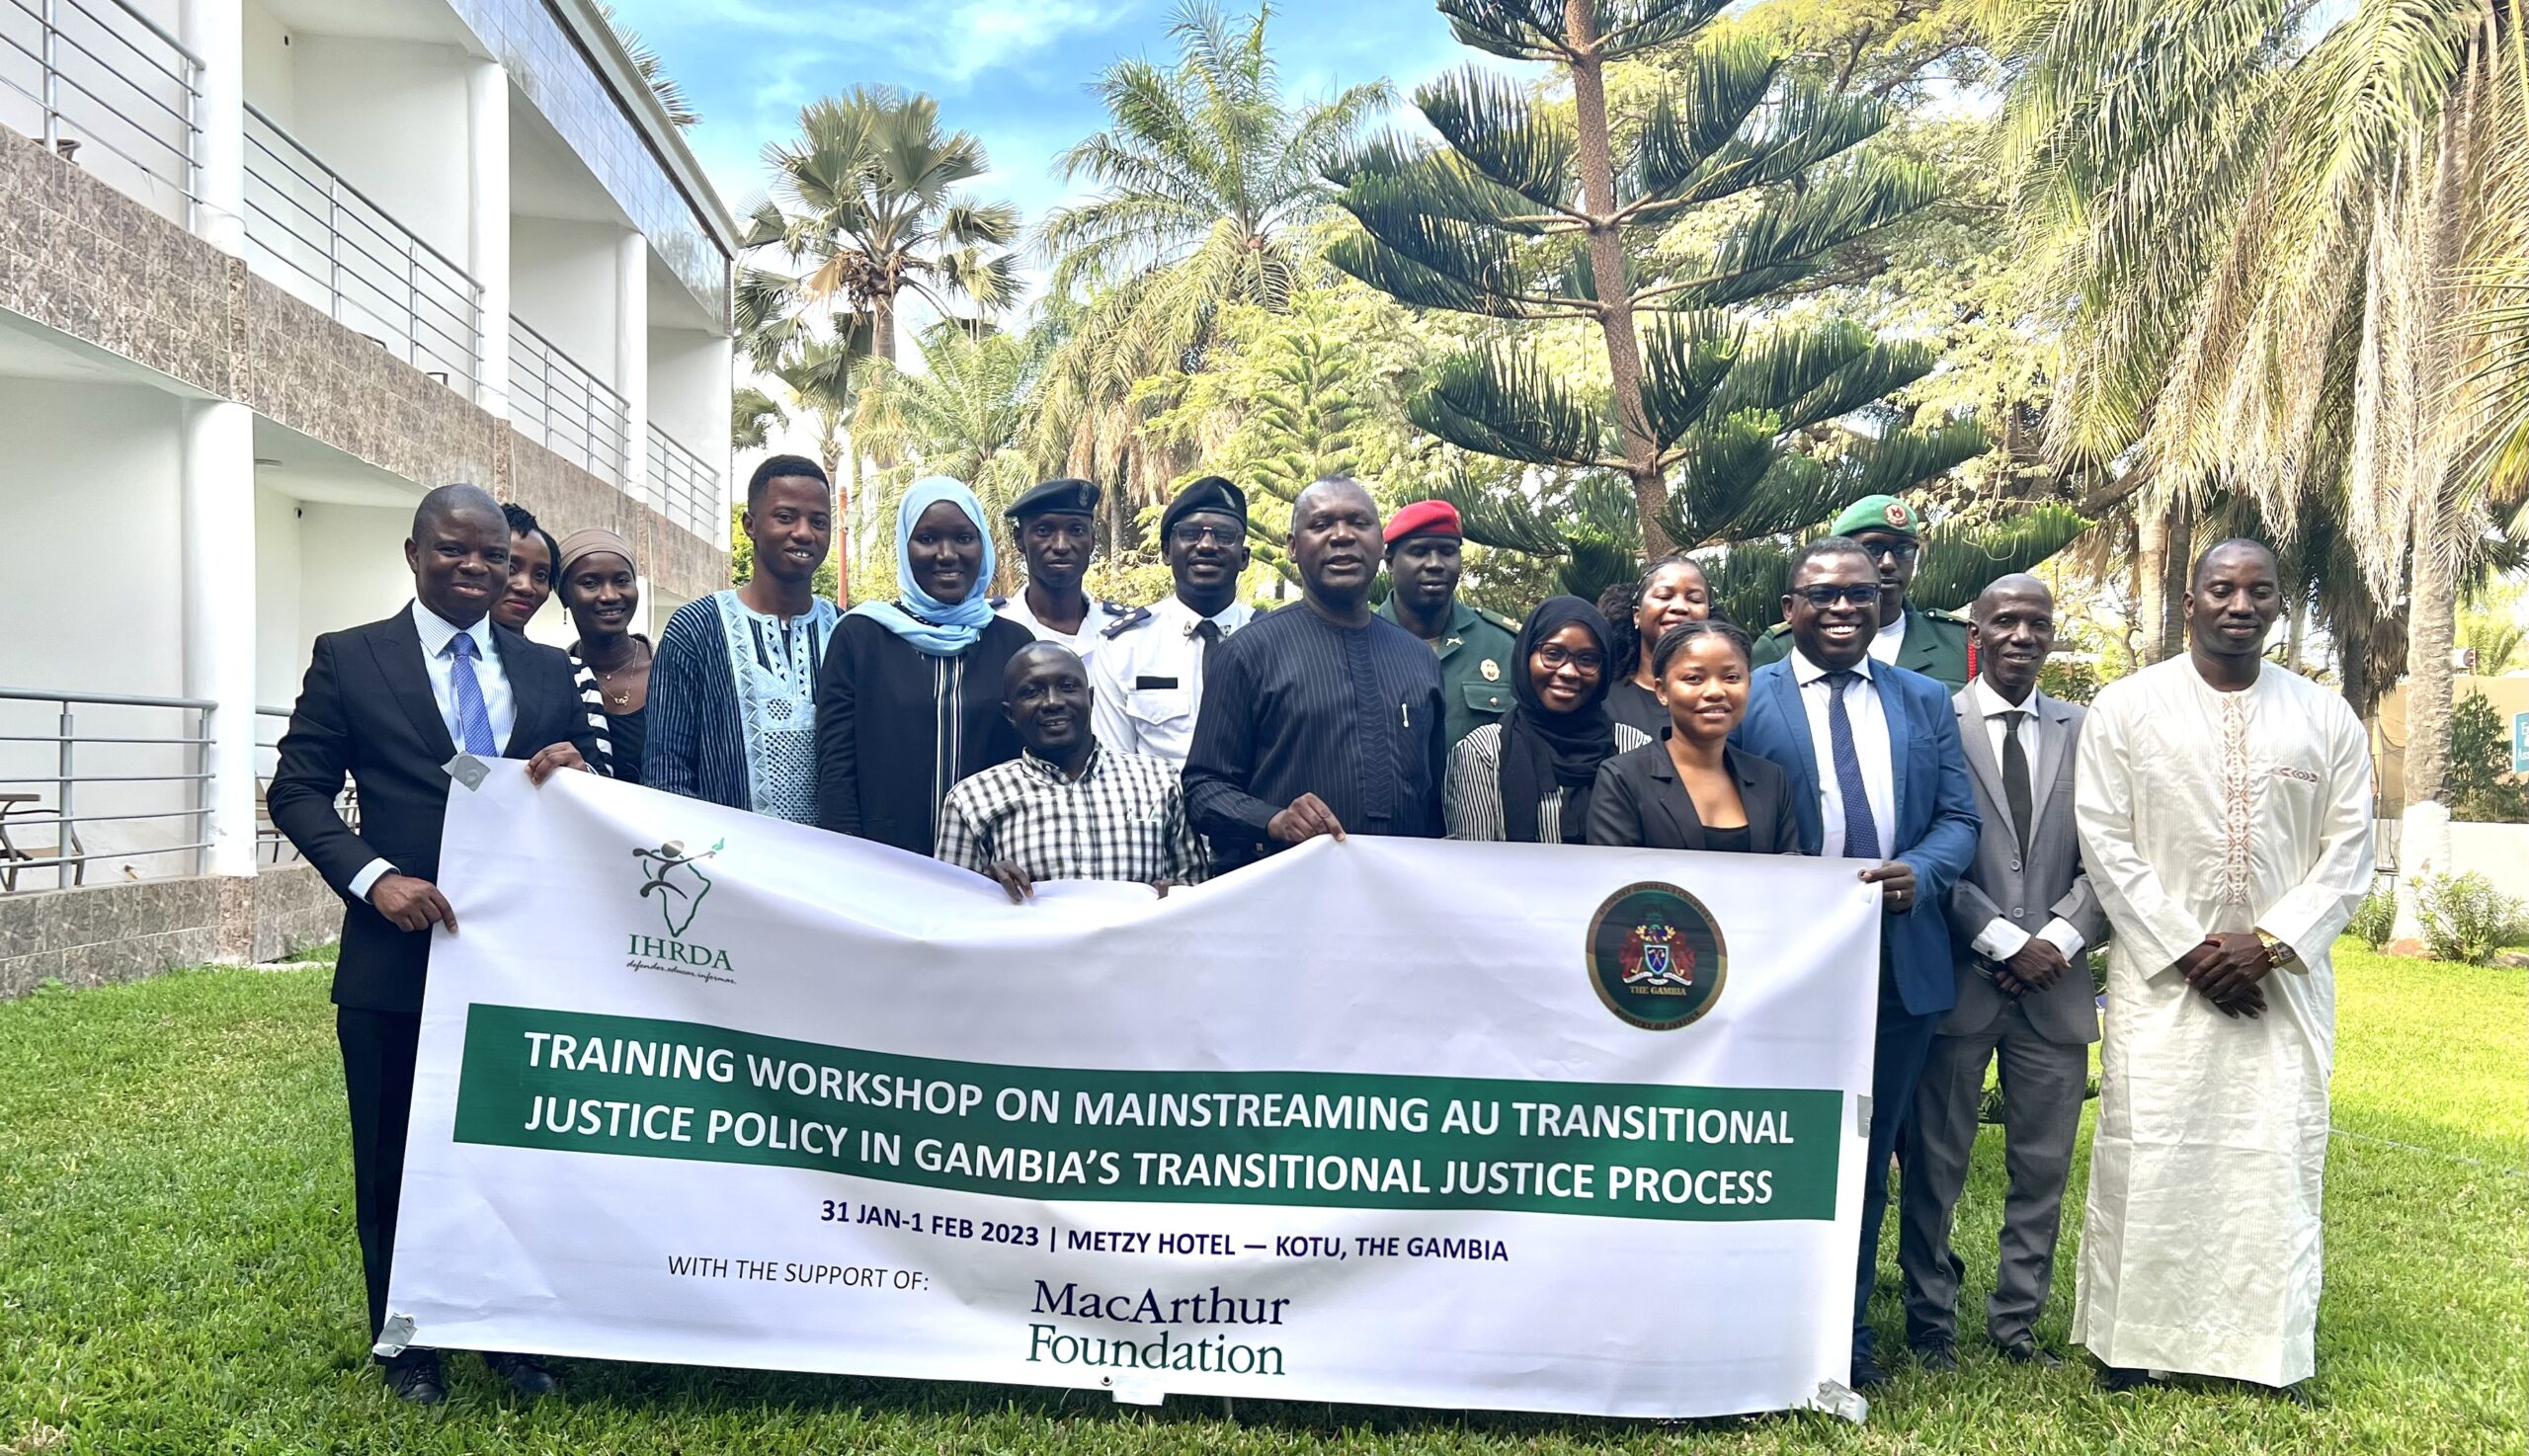 IHRDA sensibilise les principales parties prenantes du secteur de la justice en Gambie sur l’application de la PJTUA dans les processus de justice transitionnelle de la Gambie